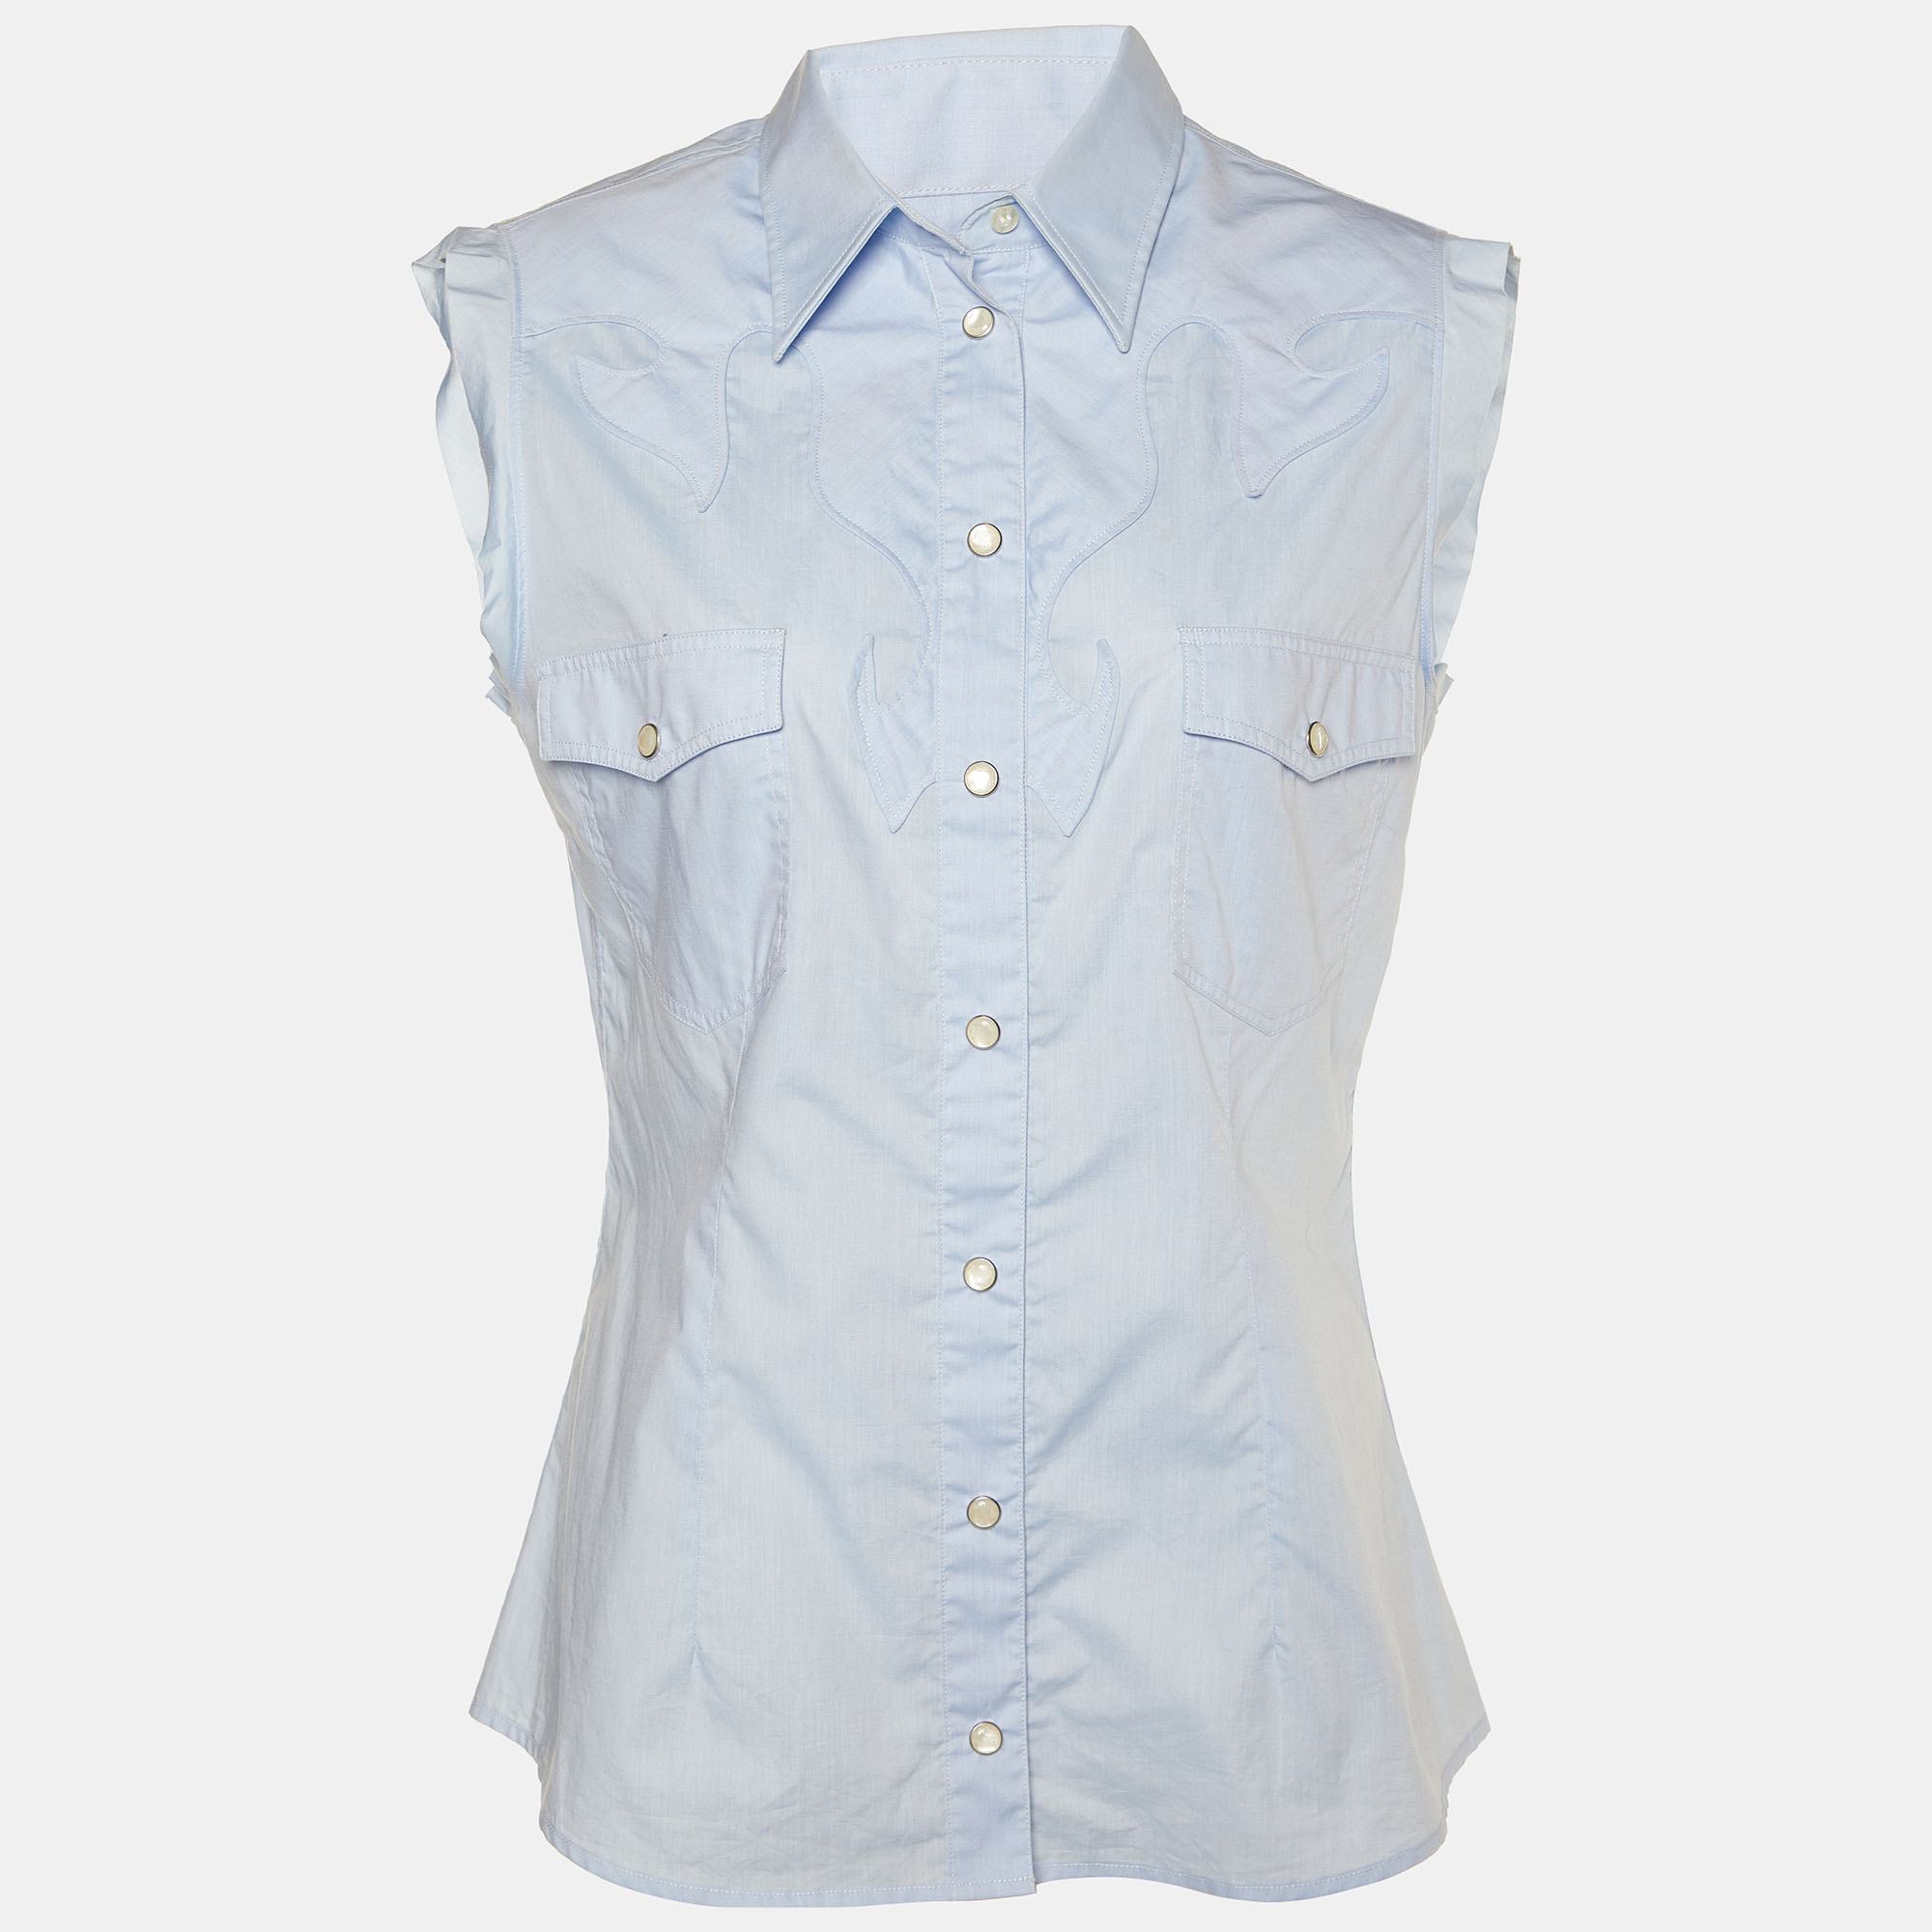 D&g blue cotton sleeveless button front shirt m